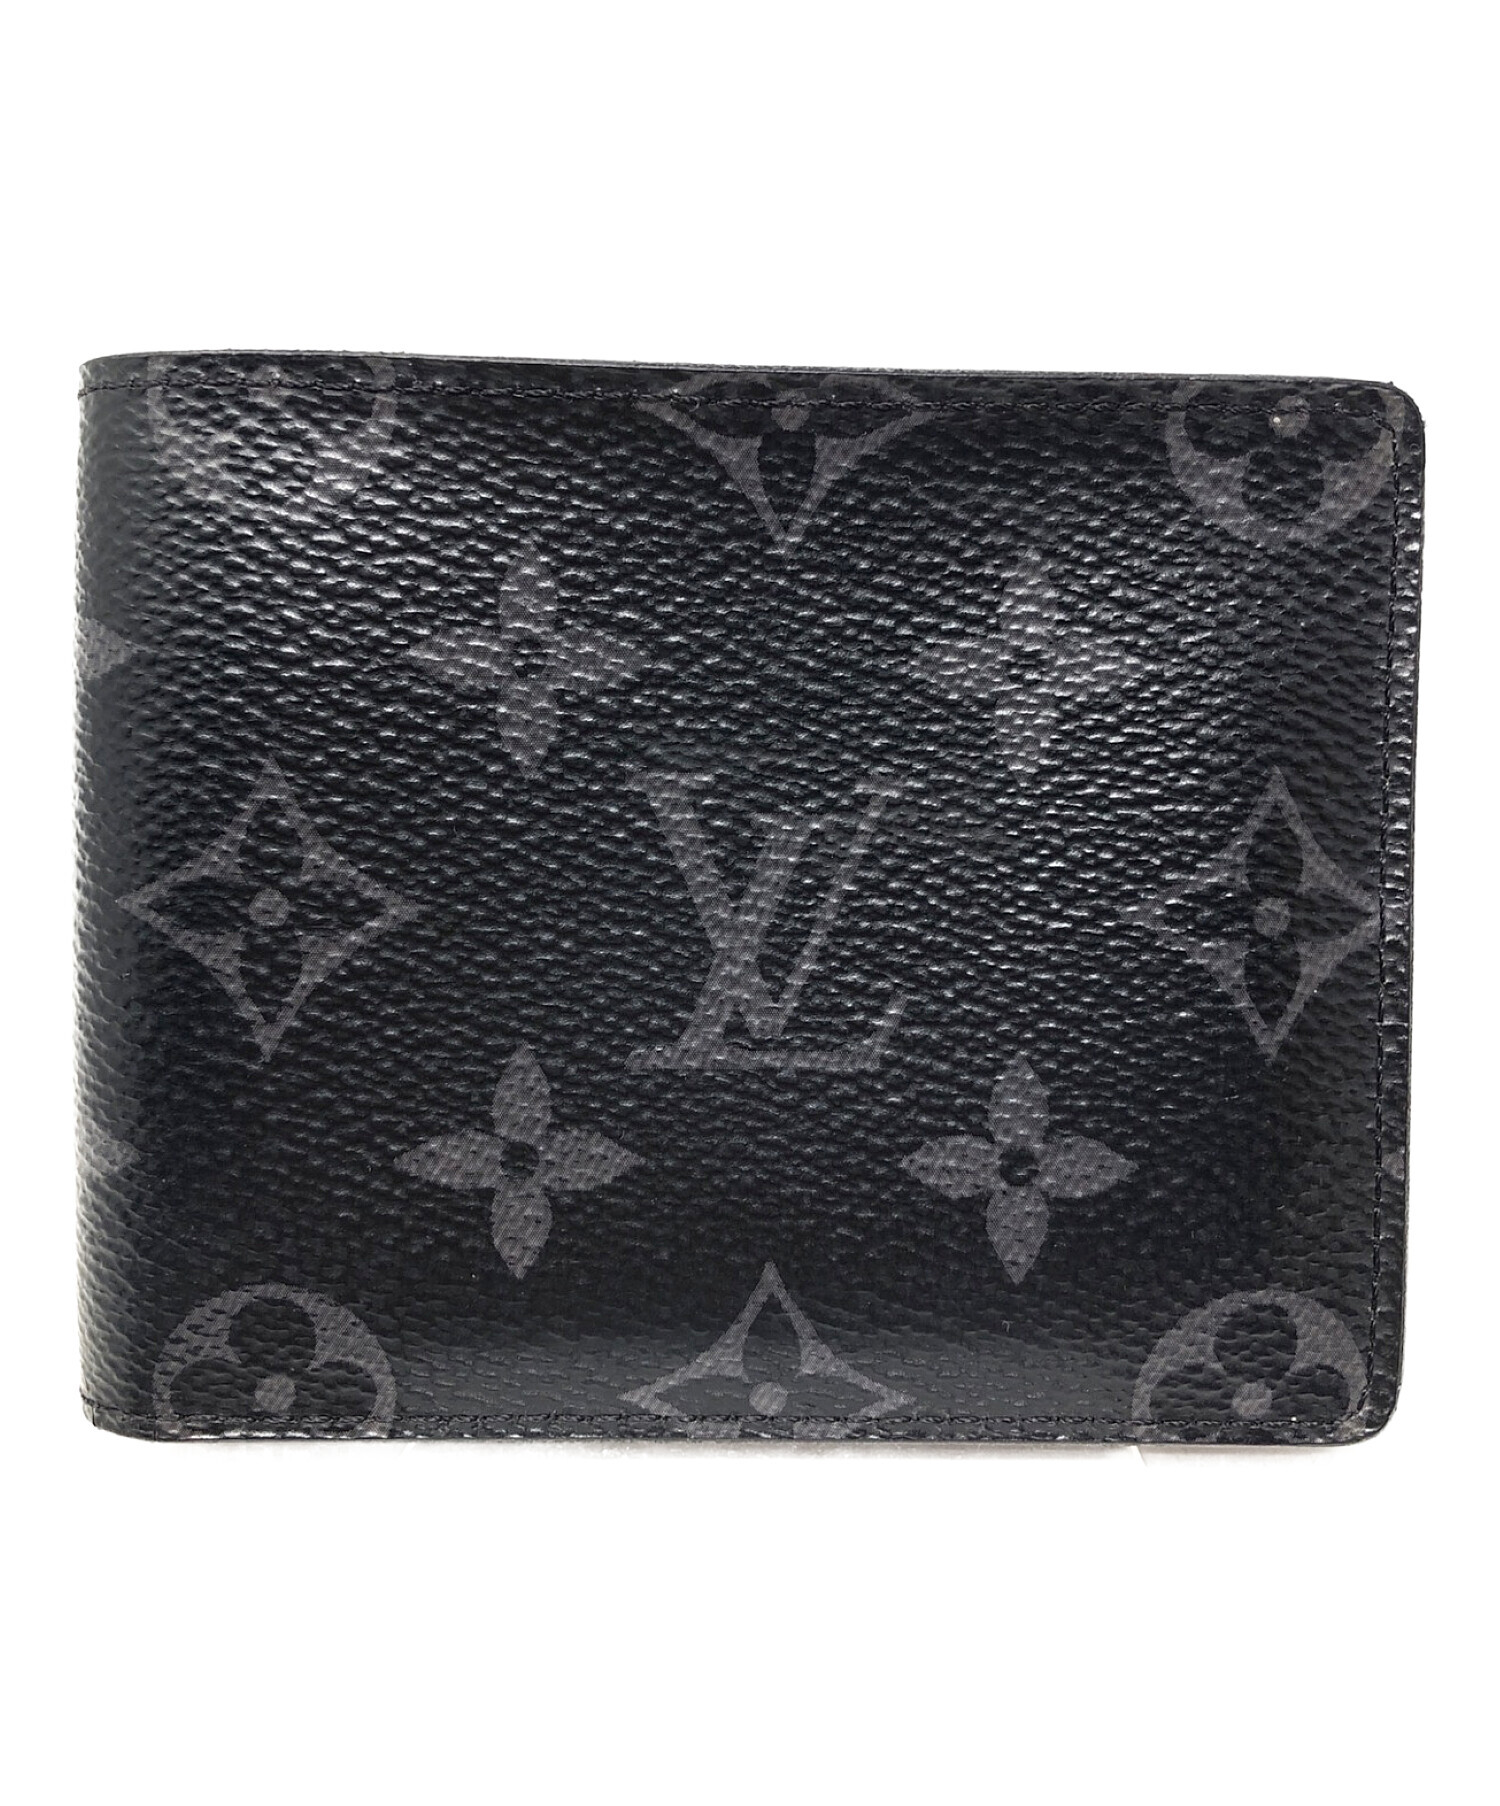 LOUIS VUITTON (ルイ ヴィトン) 2つ折り財布 モノグラムエクリプス ポルトフォイユスレンダー ブラック  サイズ:実寸サイズにてご確認ください。